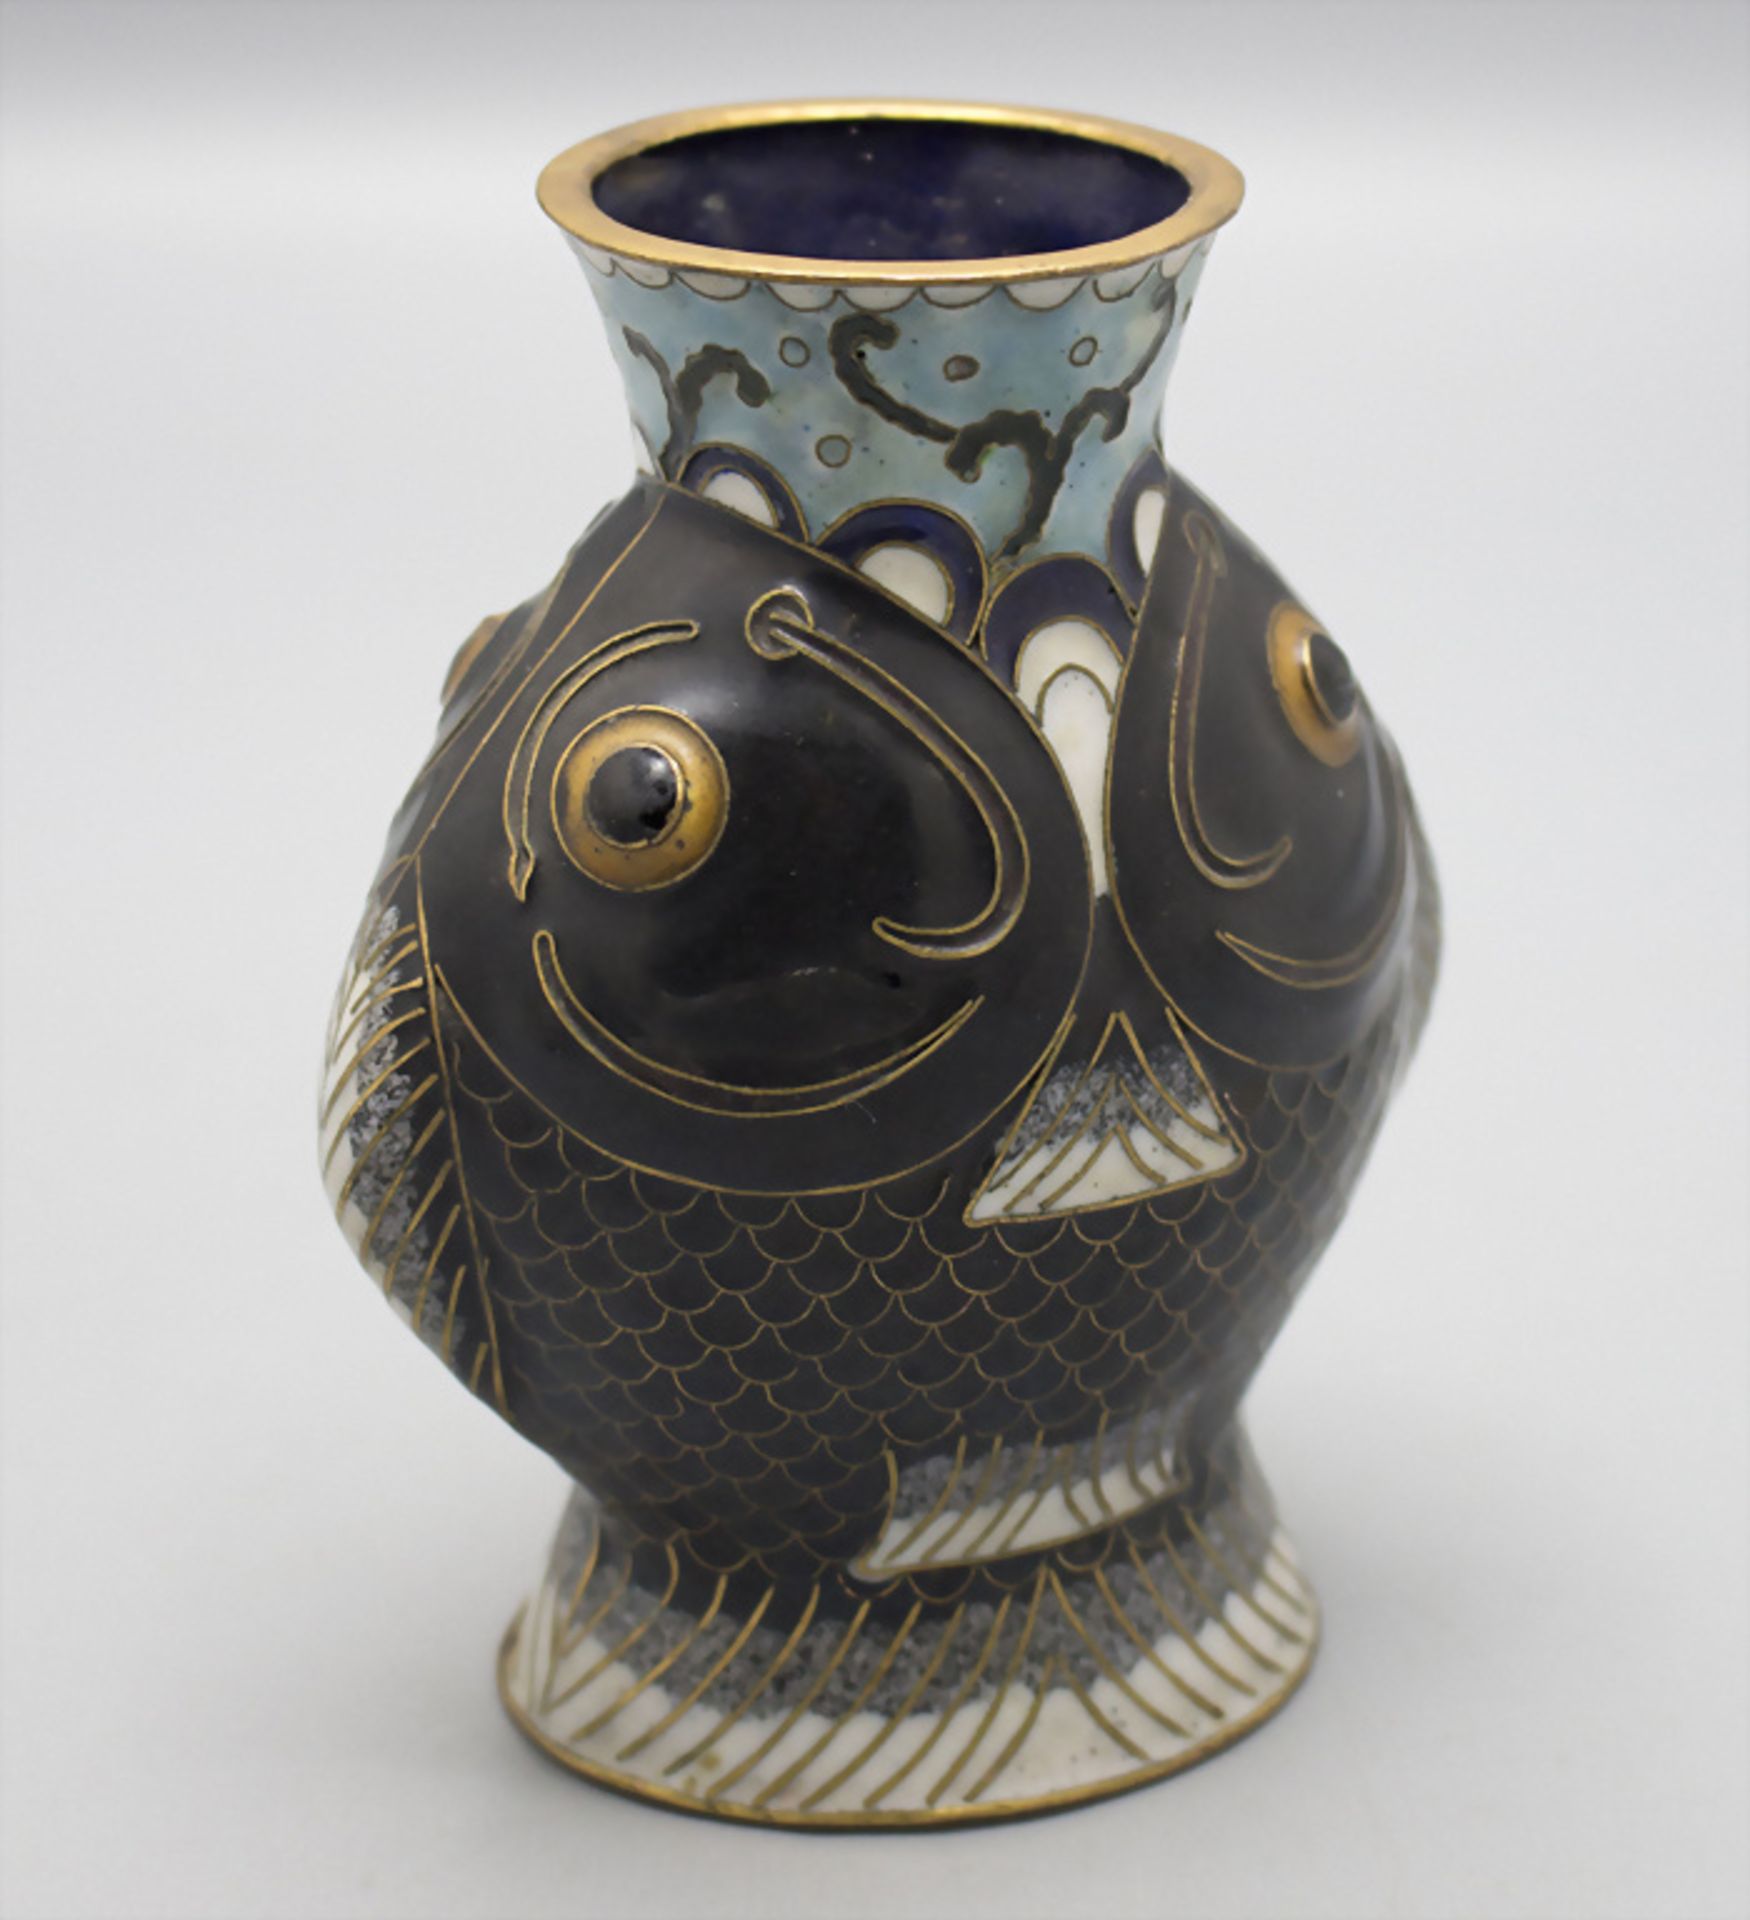 Seltene Cloisonné-Vase / A rare Cloisonné vase, China, späte Qing Dynastie (1644-1911) - Image 3 of 5